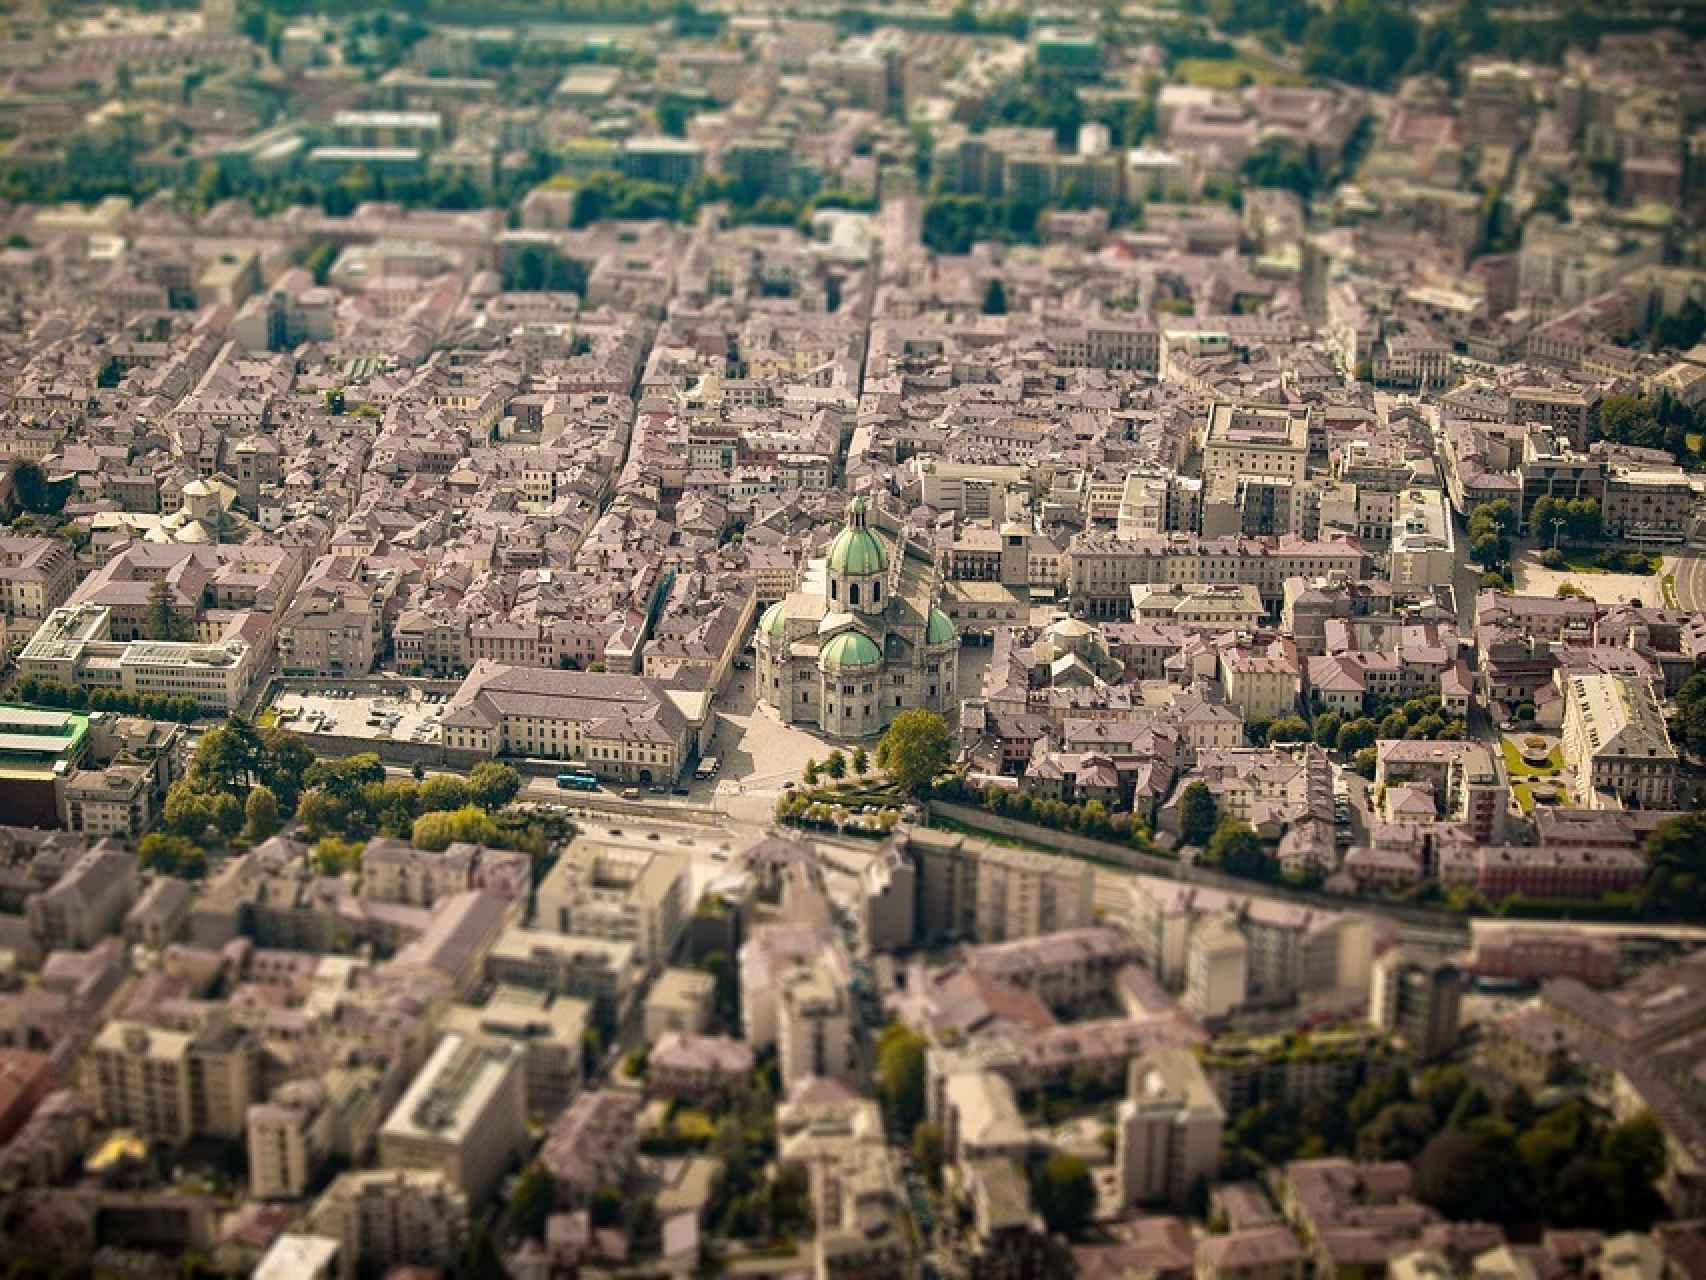 Vista aérea de la ciudad de Como con la imponente Catedral en el centro de la imagen.